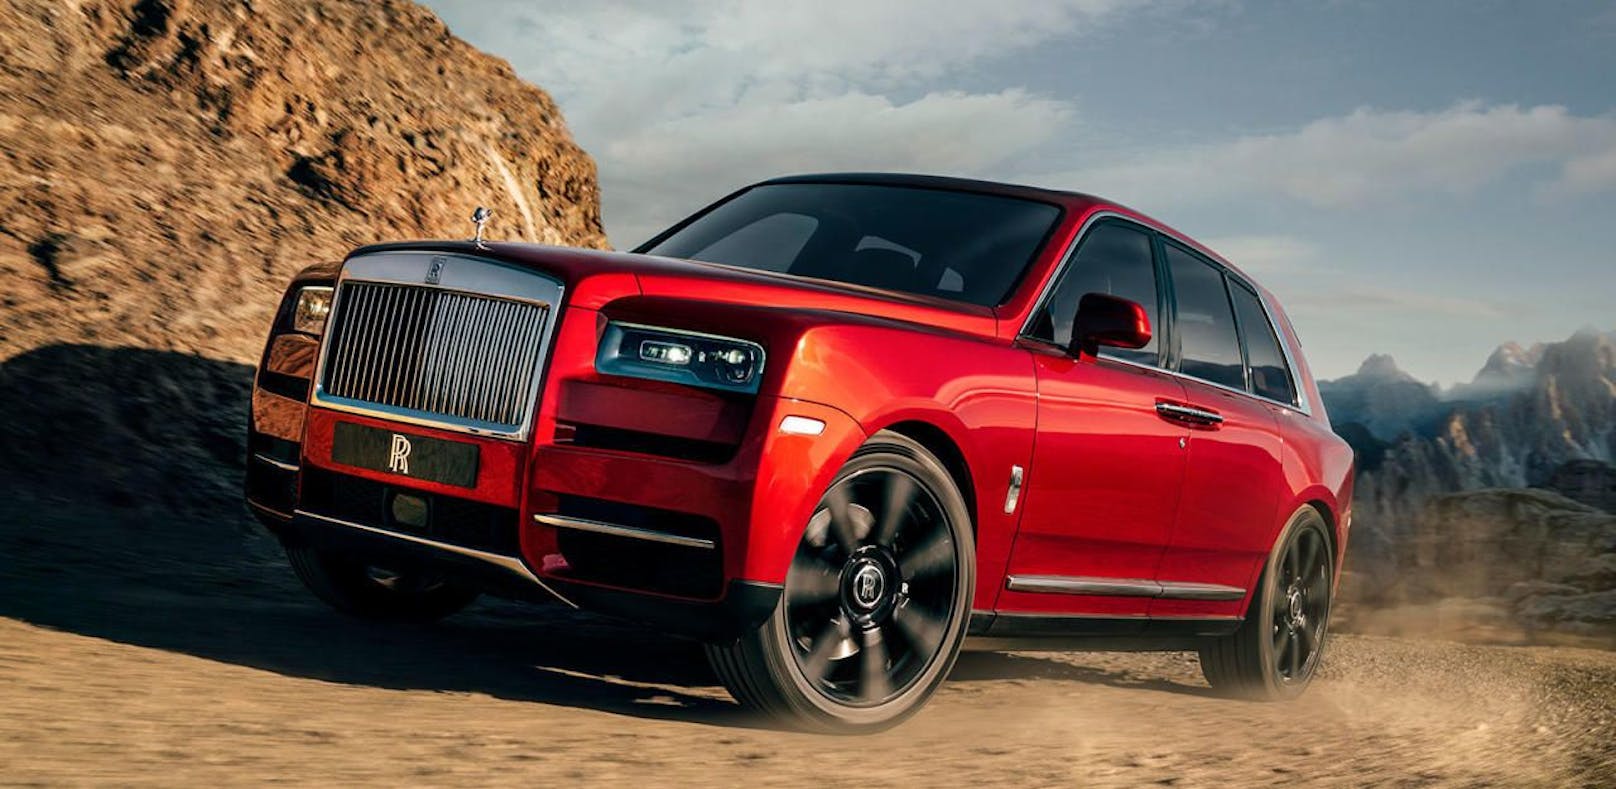 SUV von Rolls Royce: Der neue Rolls Royce Cullinan